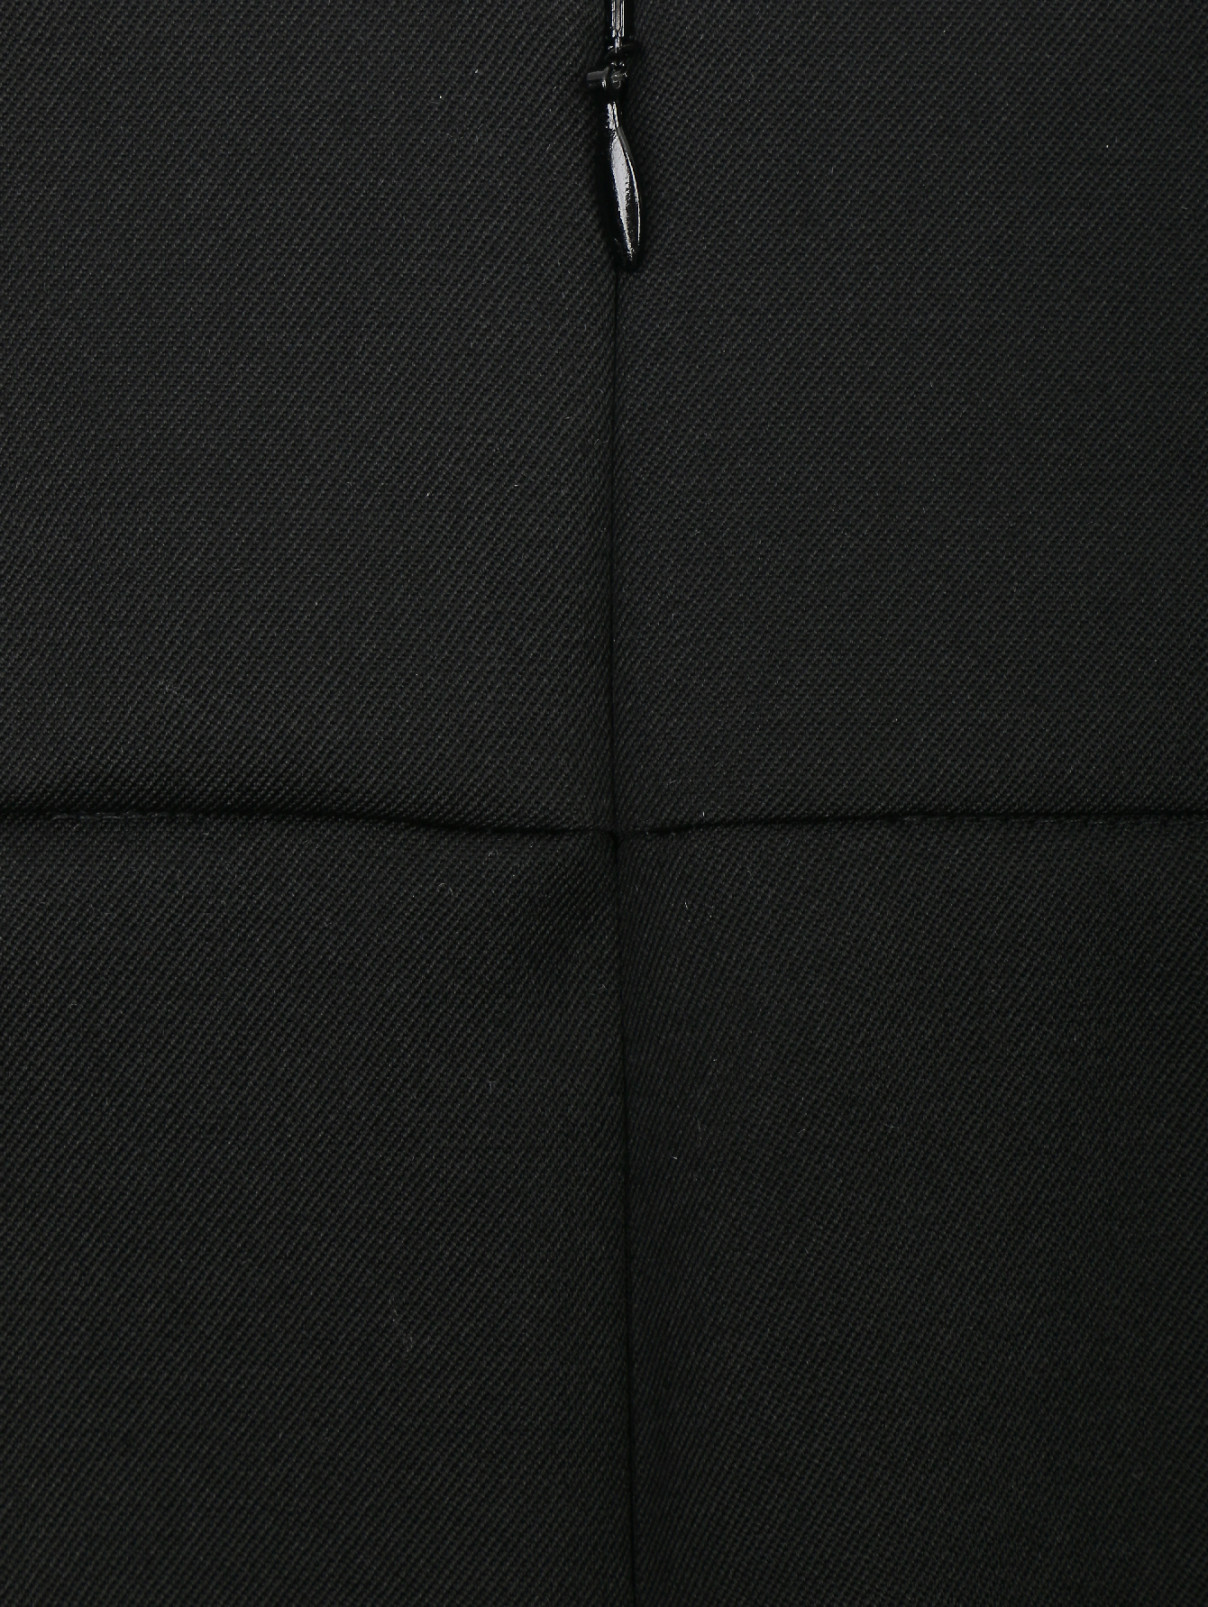 Юбка шерстяная с декоративными складками Nina Ricci  –  Деталь  – Цвет:  Черный